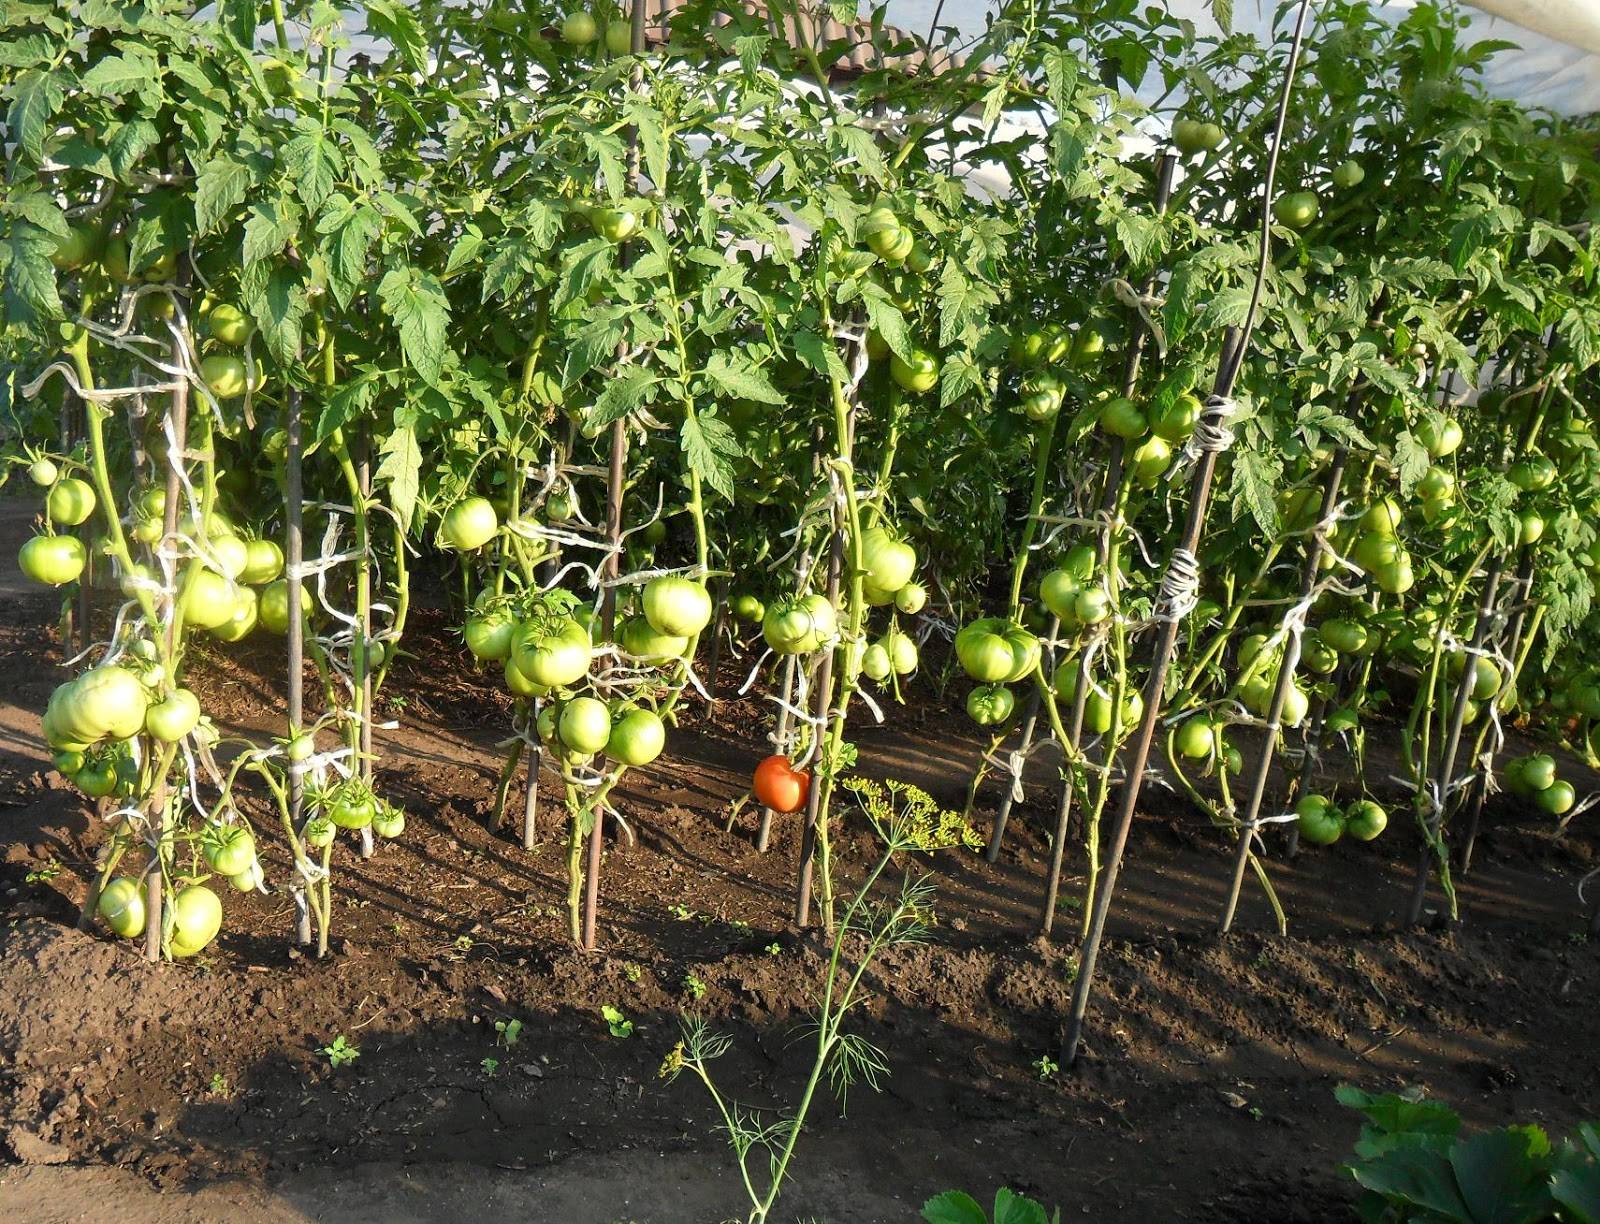 Куриный помет как удобрение для помидор и огурцов - можно ли использовать и как это делать правильно?